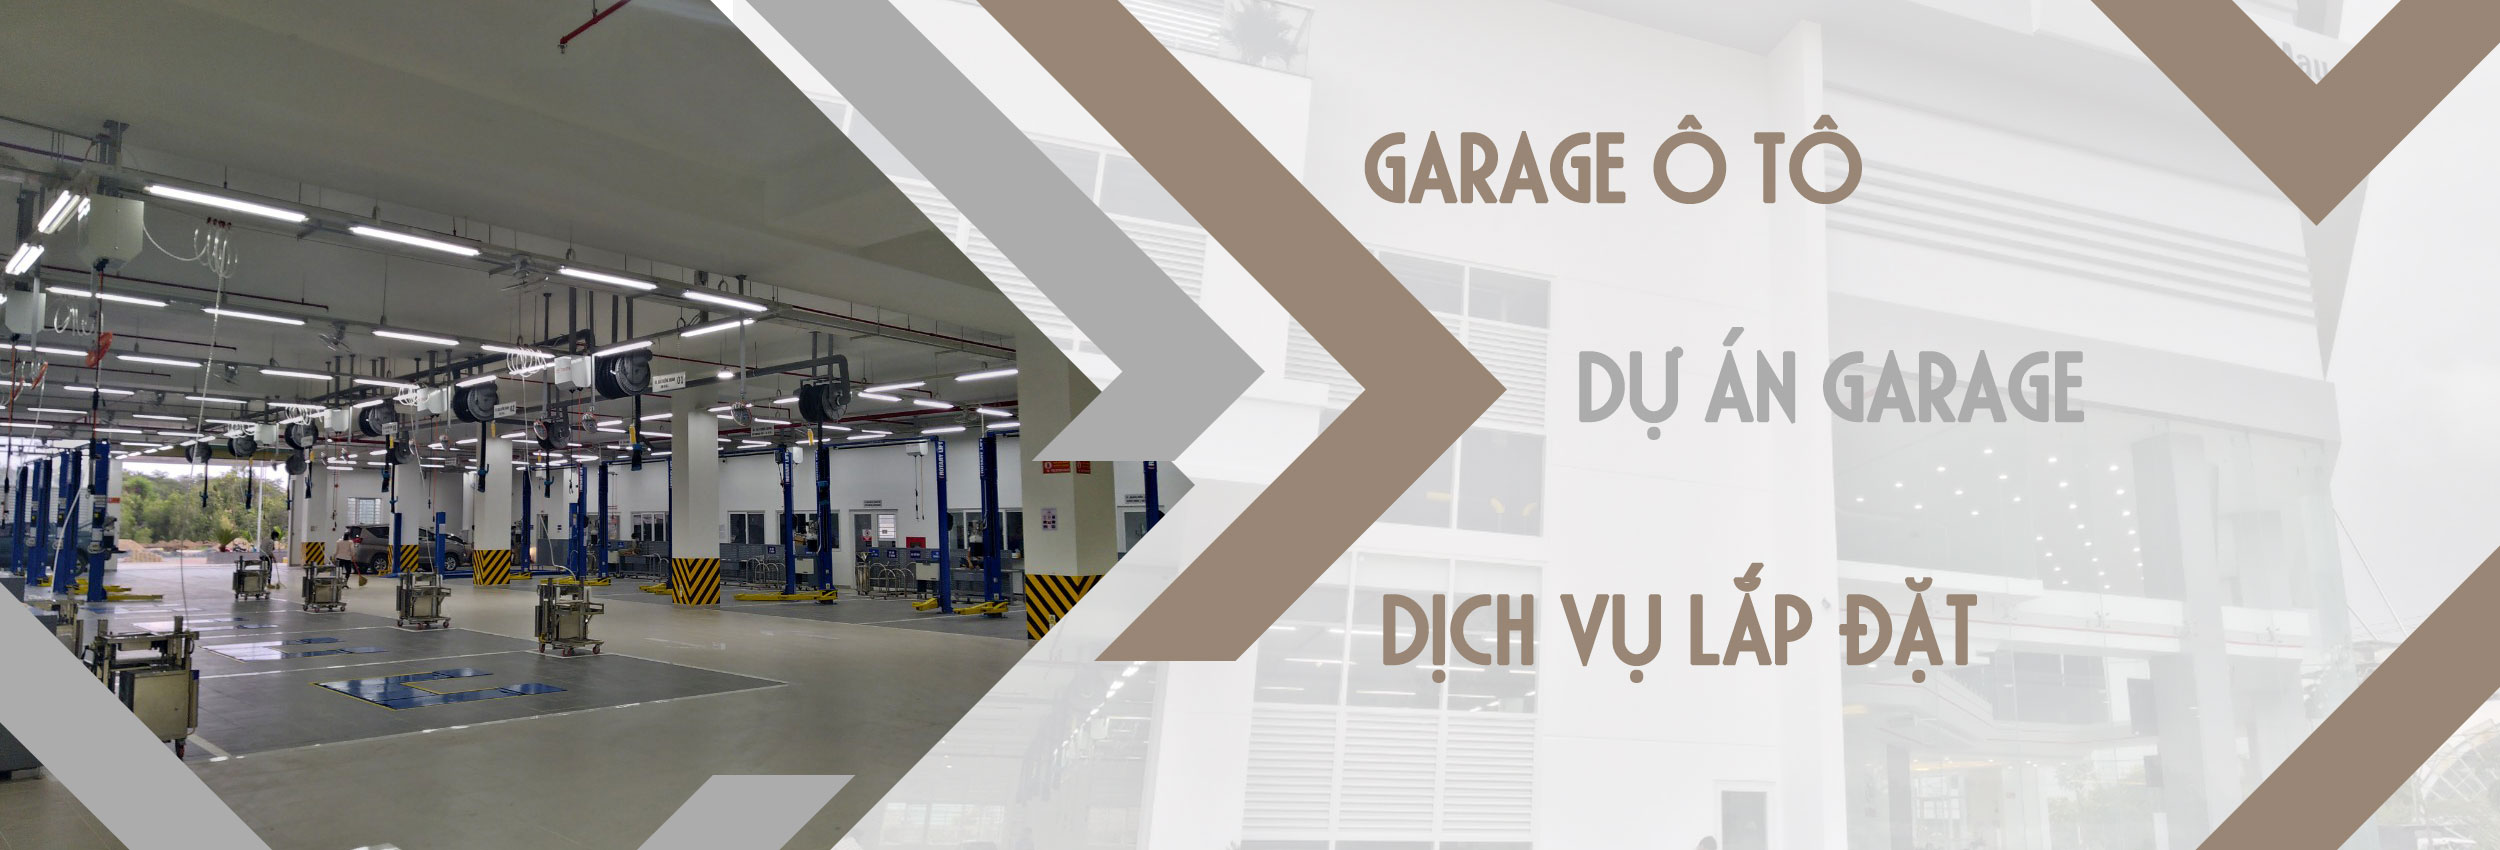 Garage sửa chữa - bảo dưỡng ô tô